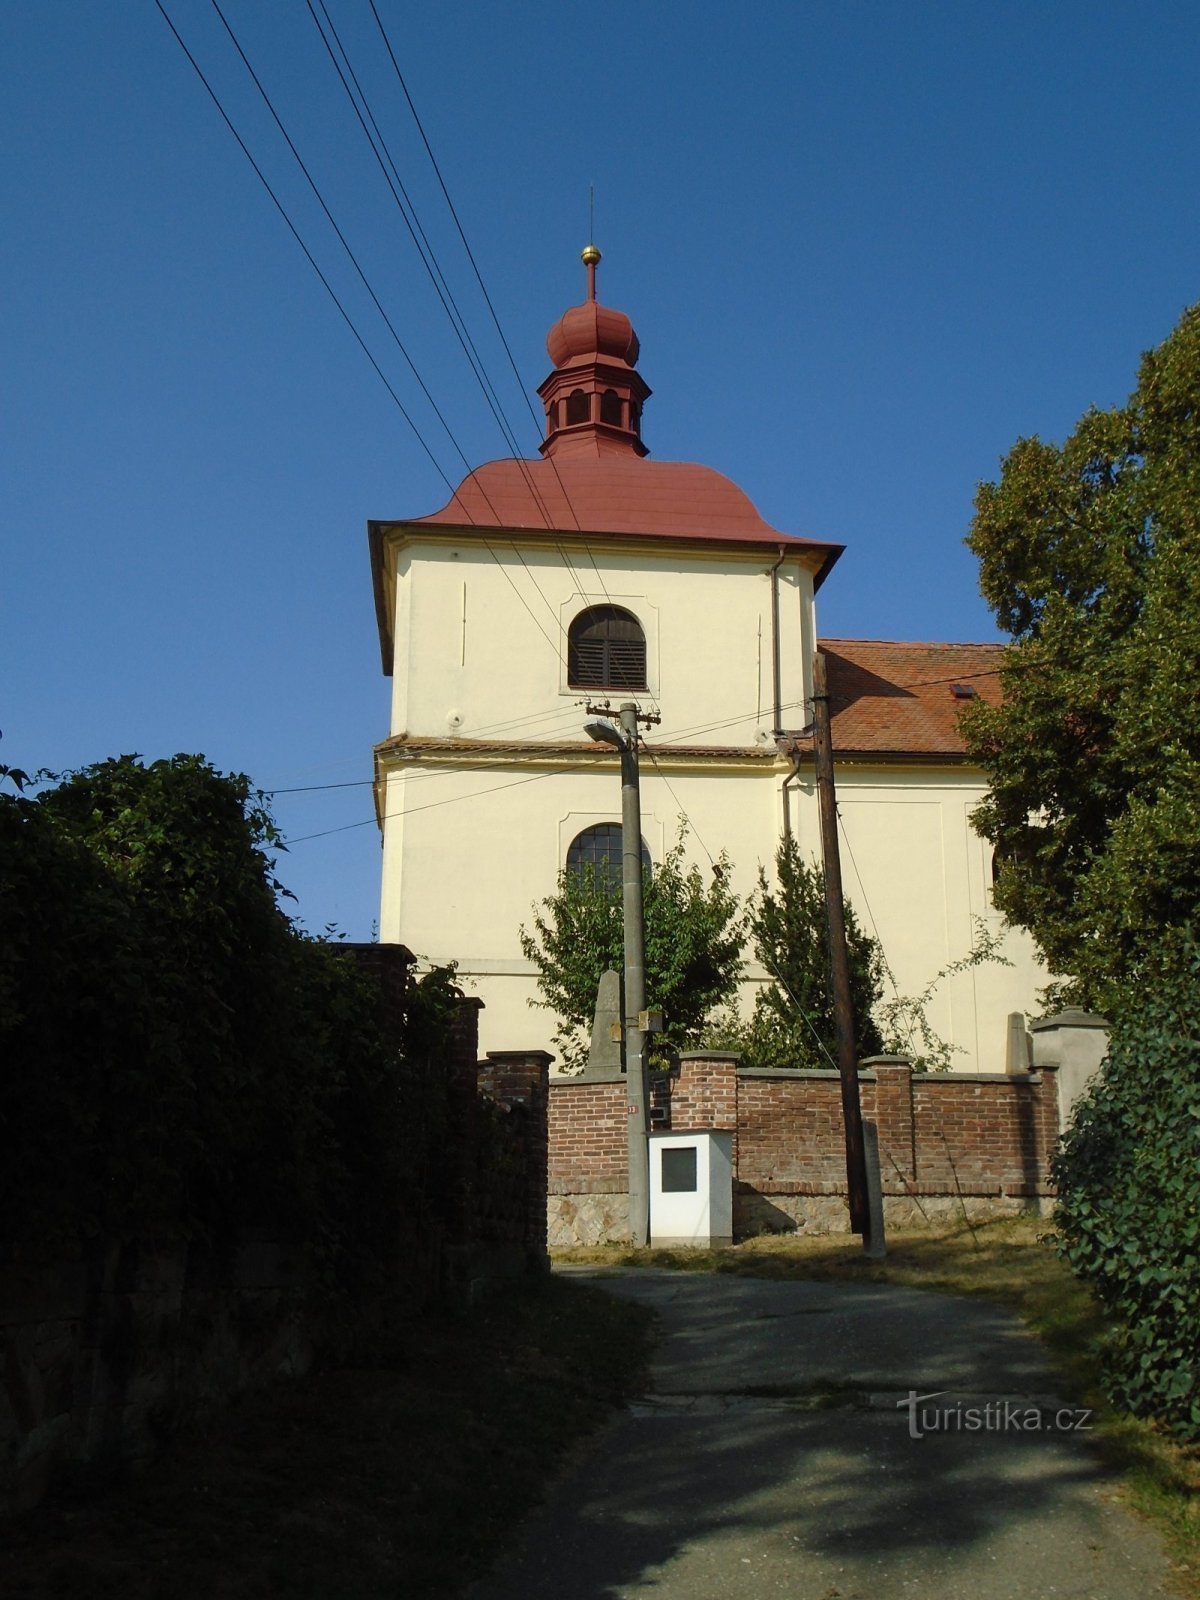 Nhà thờ St. Stanislava (Sendražice, ngày 27.8.2018 tháng XNUMX năm XNUMX)